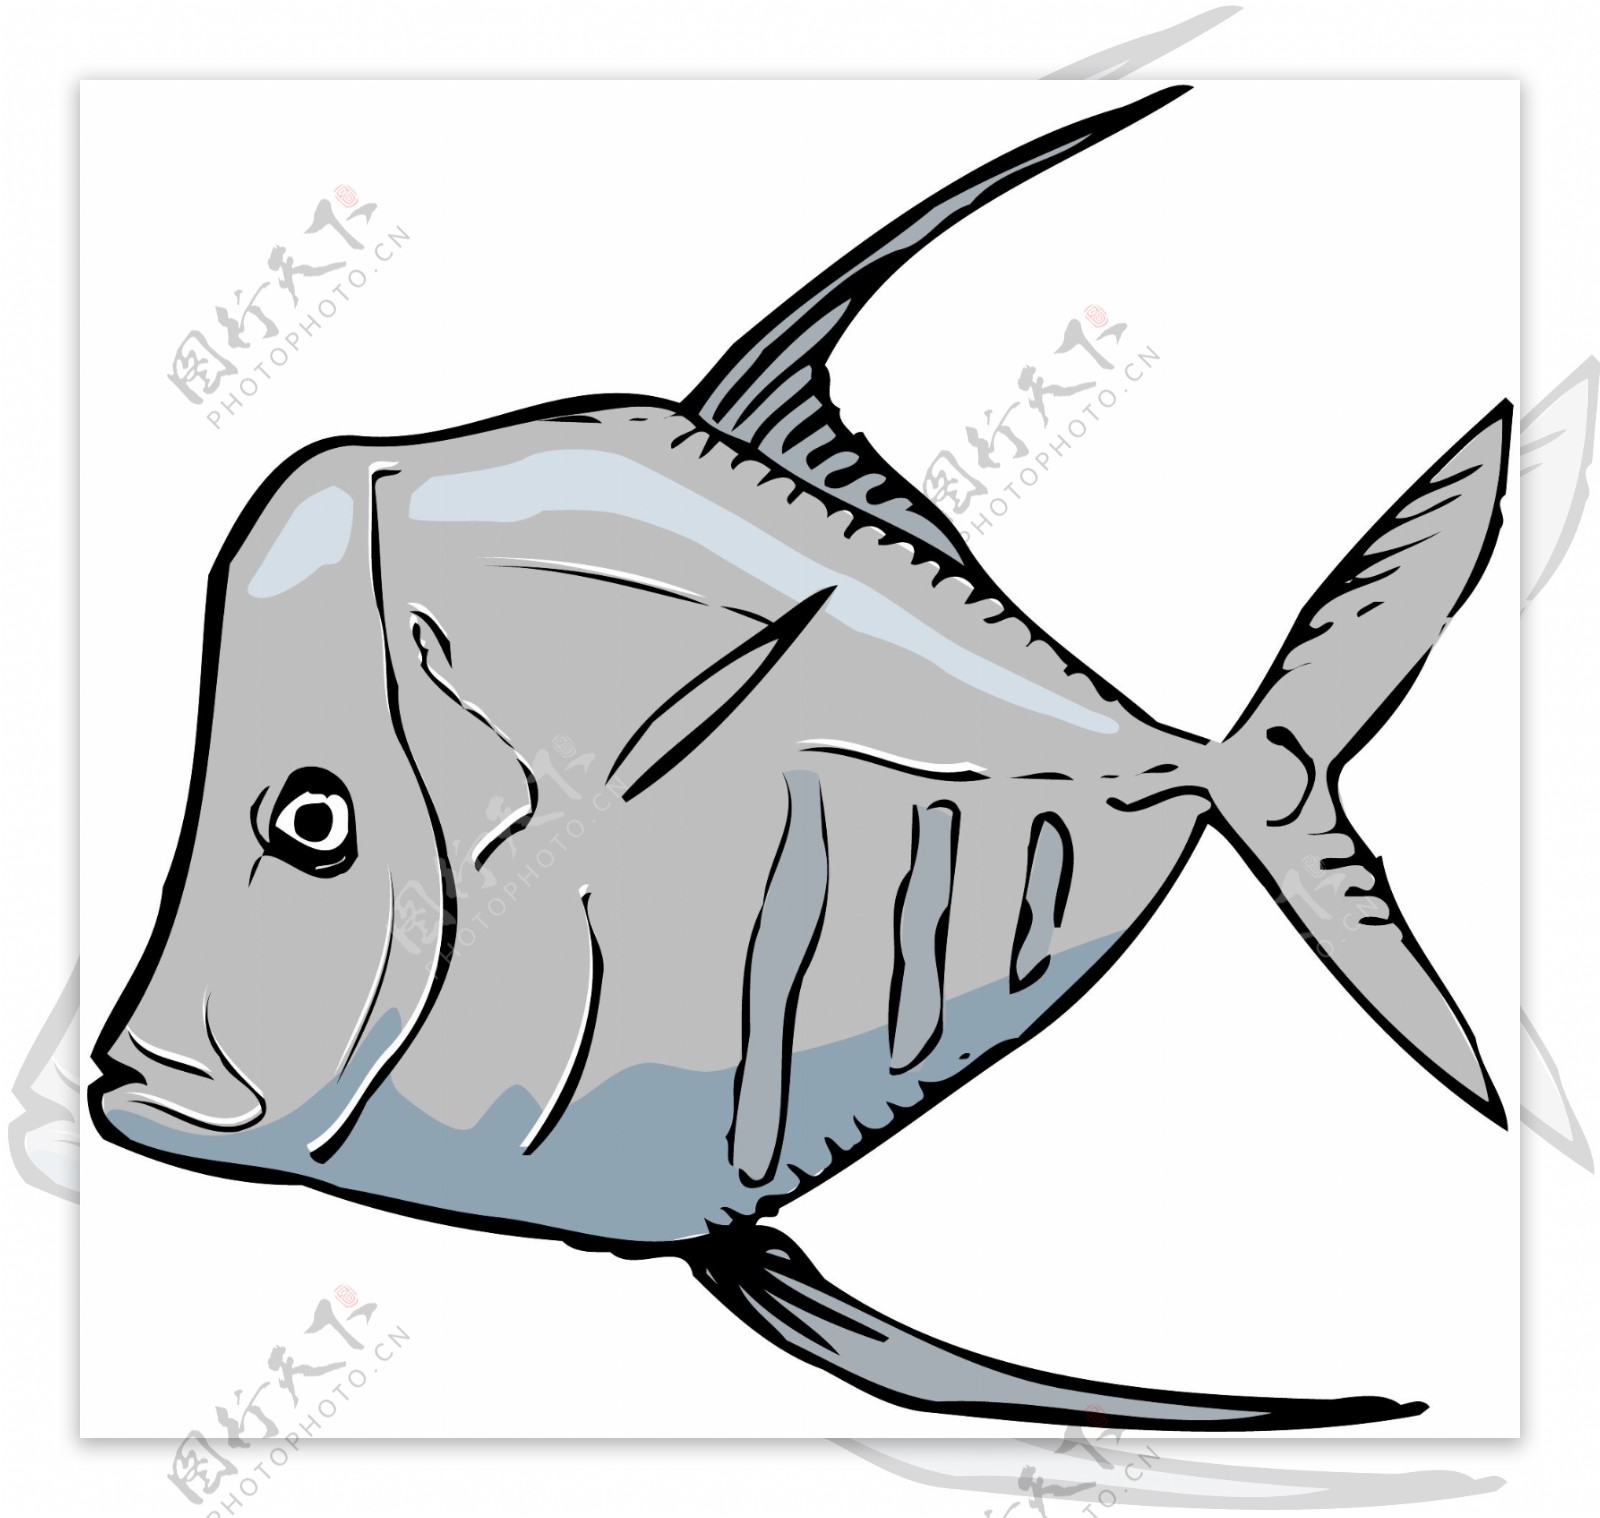 五彩小鱼水生动物矢量素材EPS格式0256